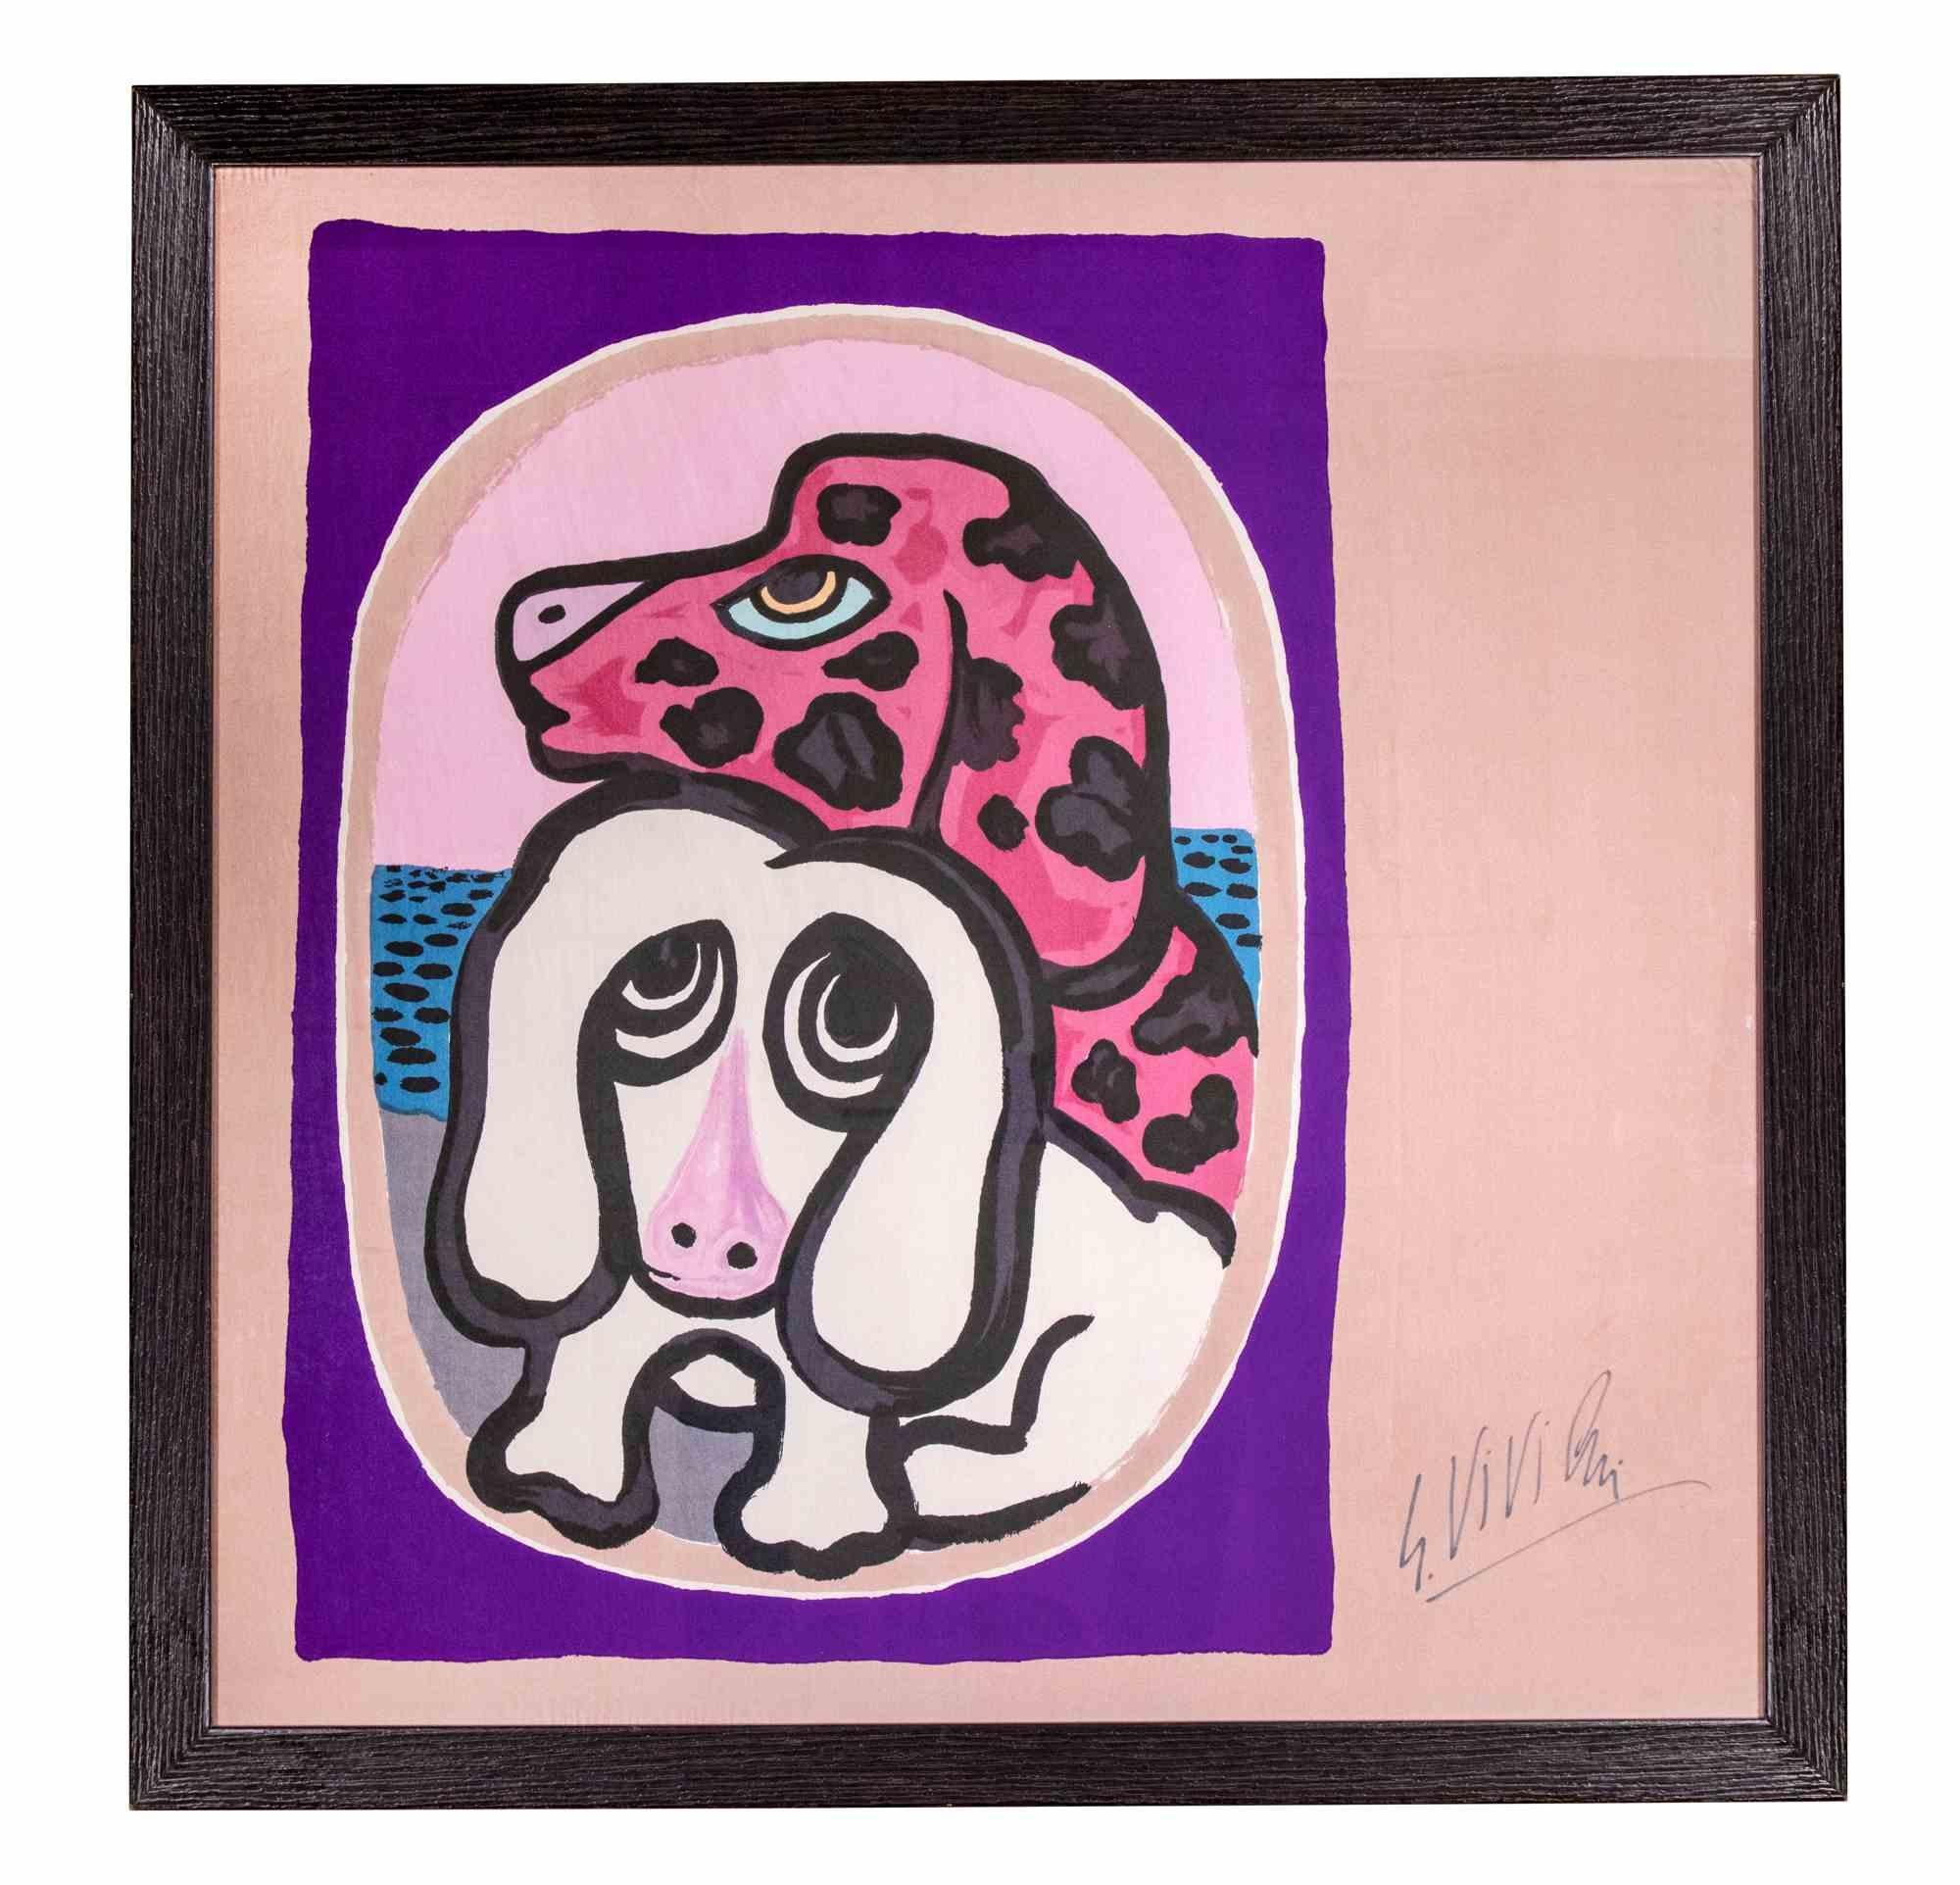 Dogs est un artwrok réalisé par Giuseppe Viviani en 1964.

L'œuvre consiste en une sérigraphie originale sur soie.

Signé à la main par l'artiste.

Édition de 300 exemplaires, dont seulement quelques-uns ont été signés par Viviani.

Publié sur le